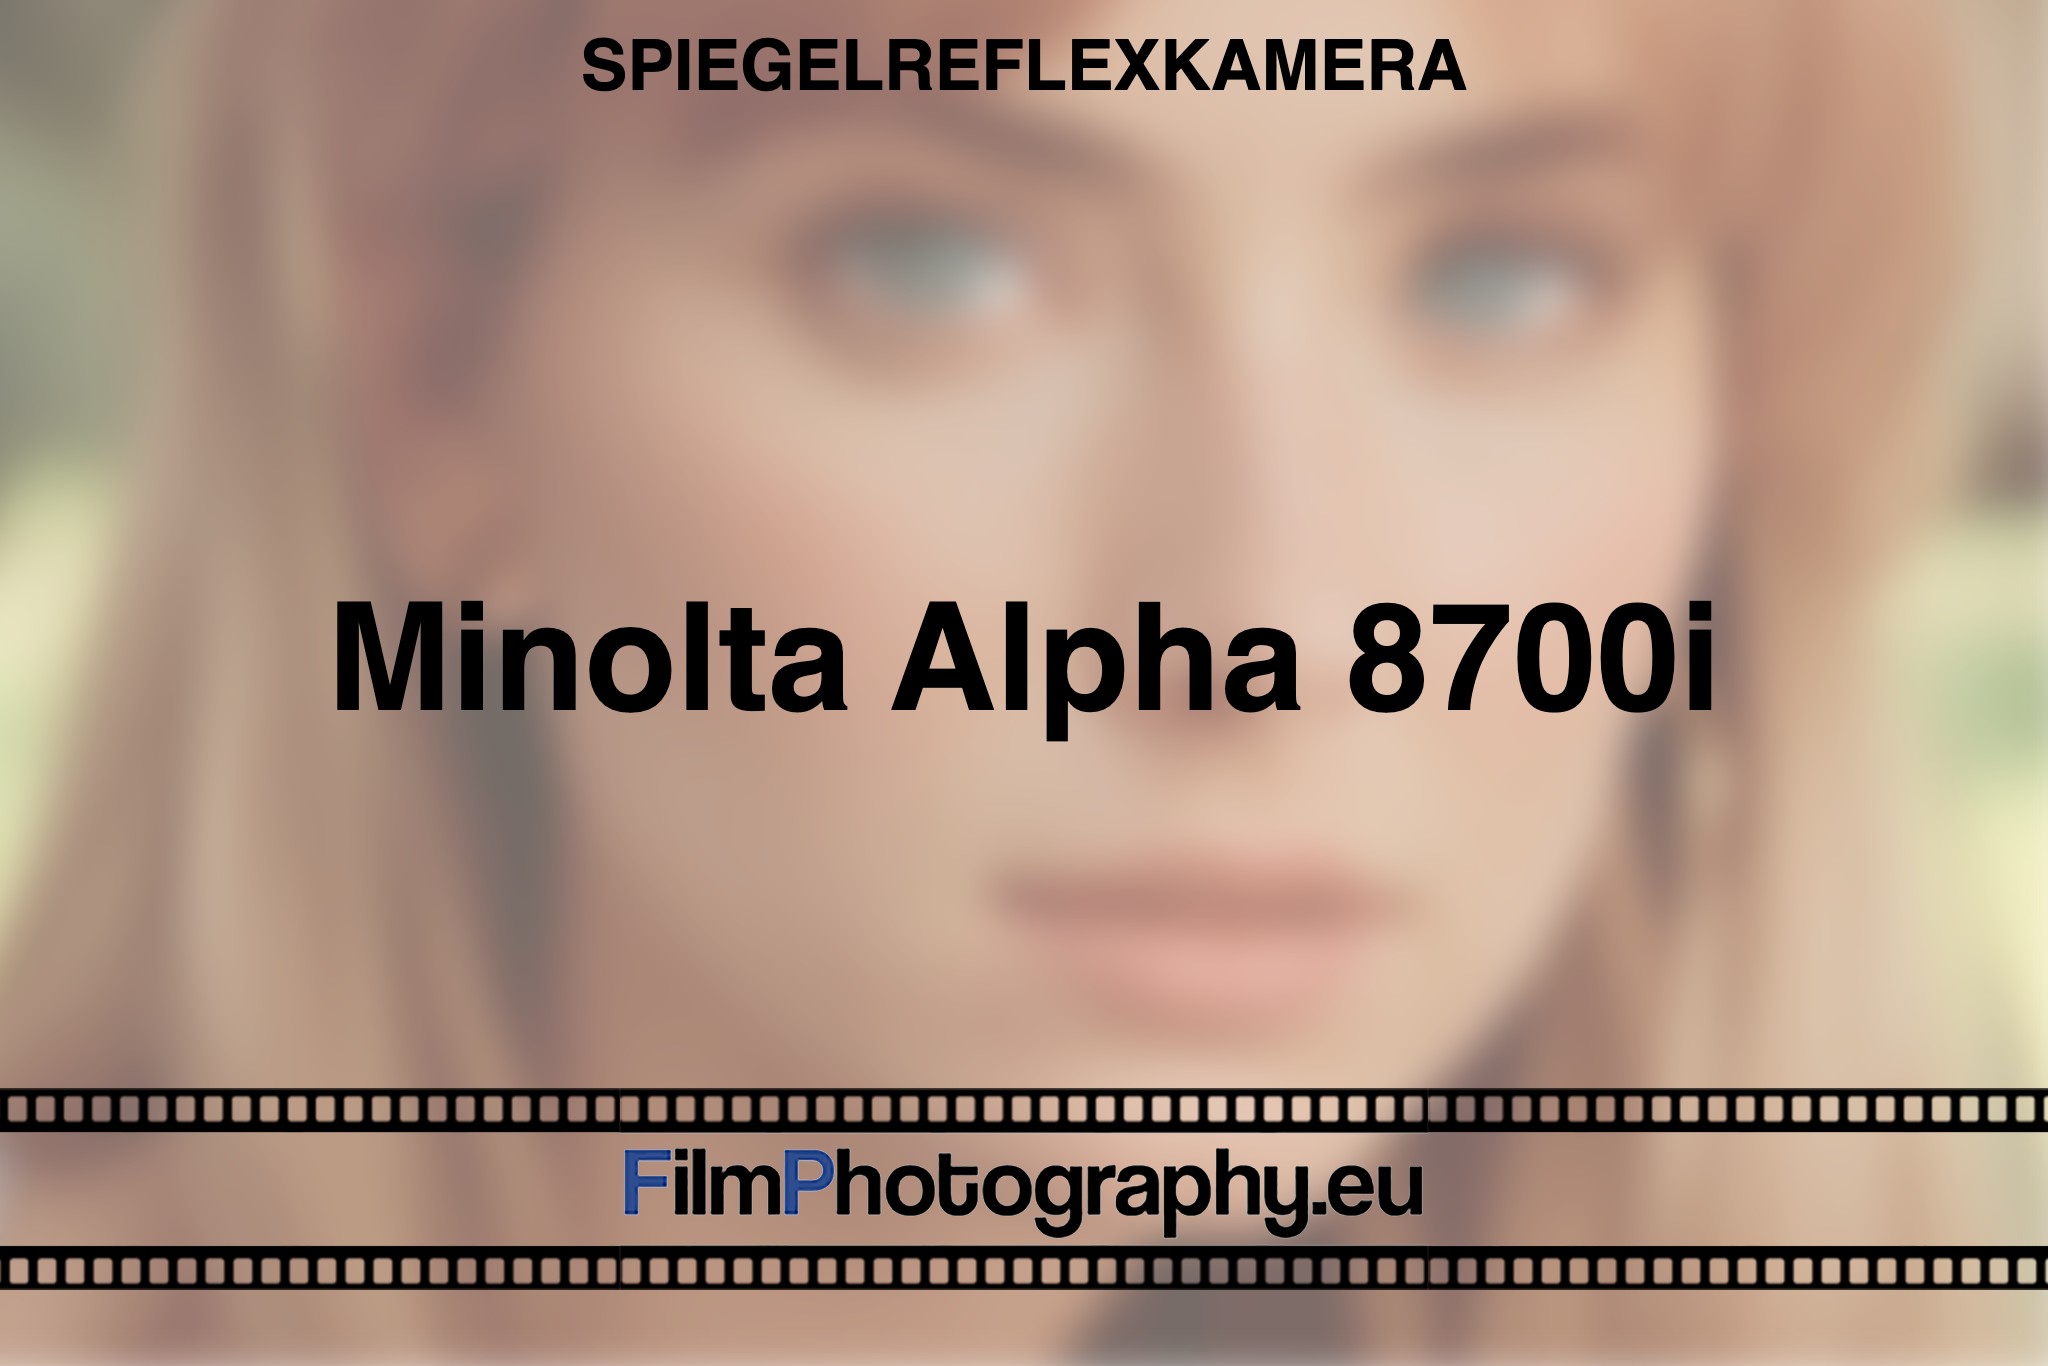 minolta-alpha-8700i-spiegelreflexkamera-bnv